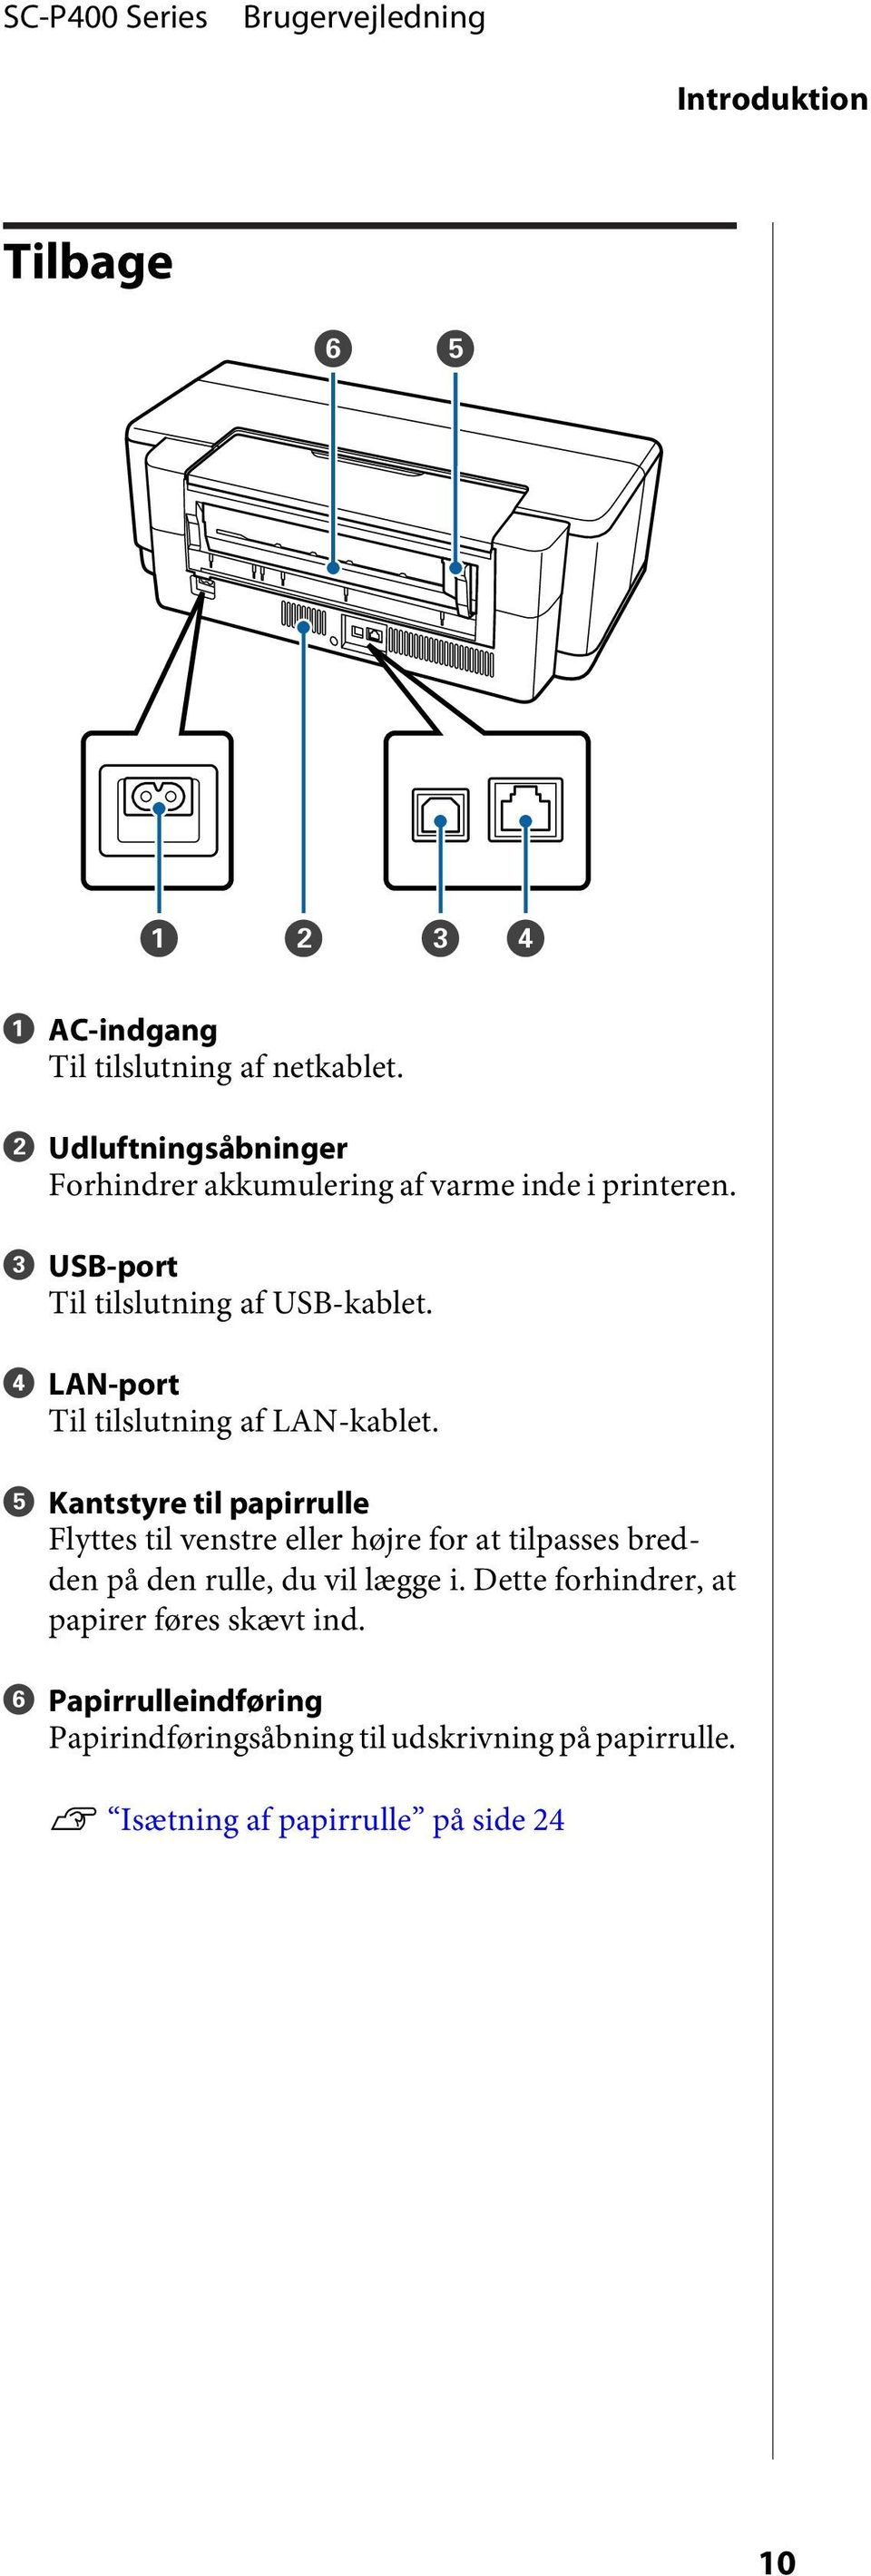 D LAN-port Til tilslutning af LAN-kablet.